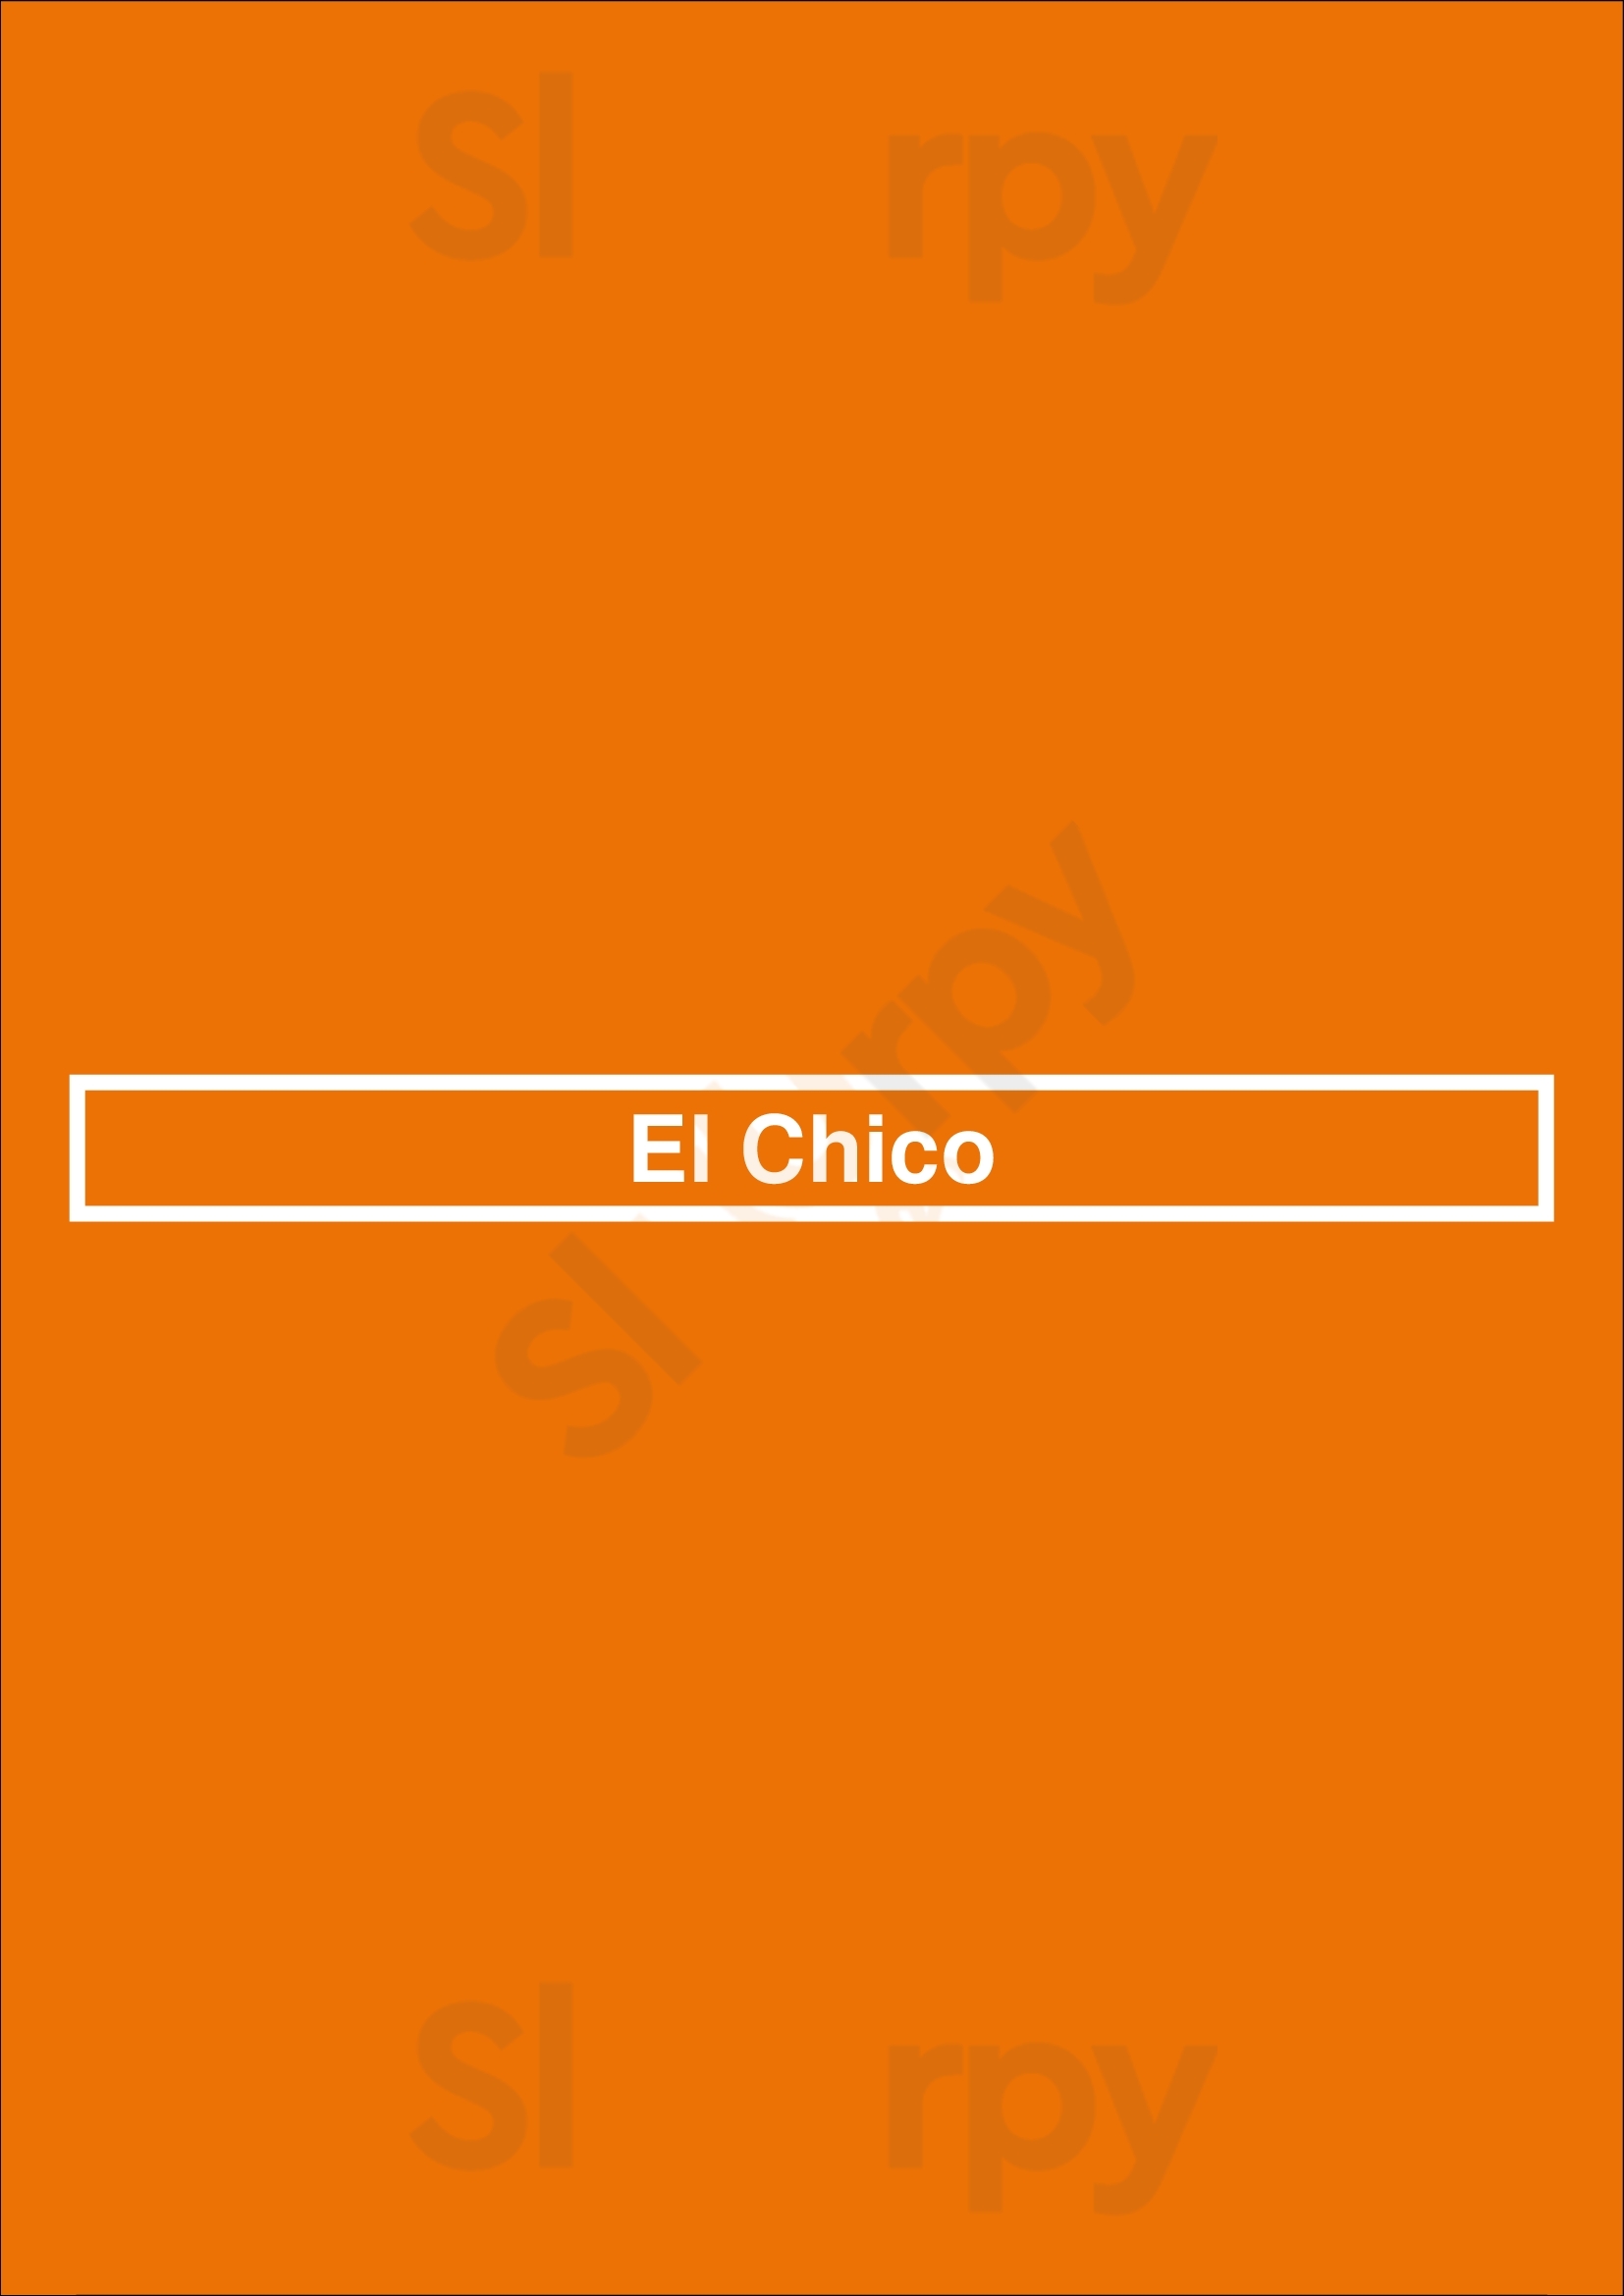 El Chico Tulsa Menu - 1